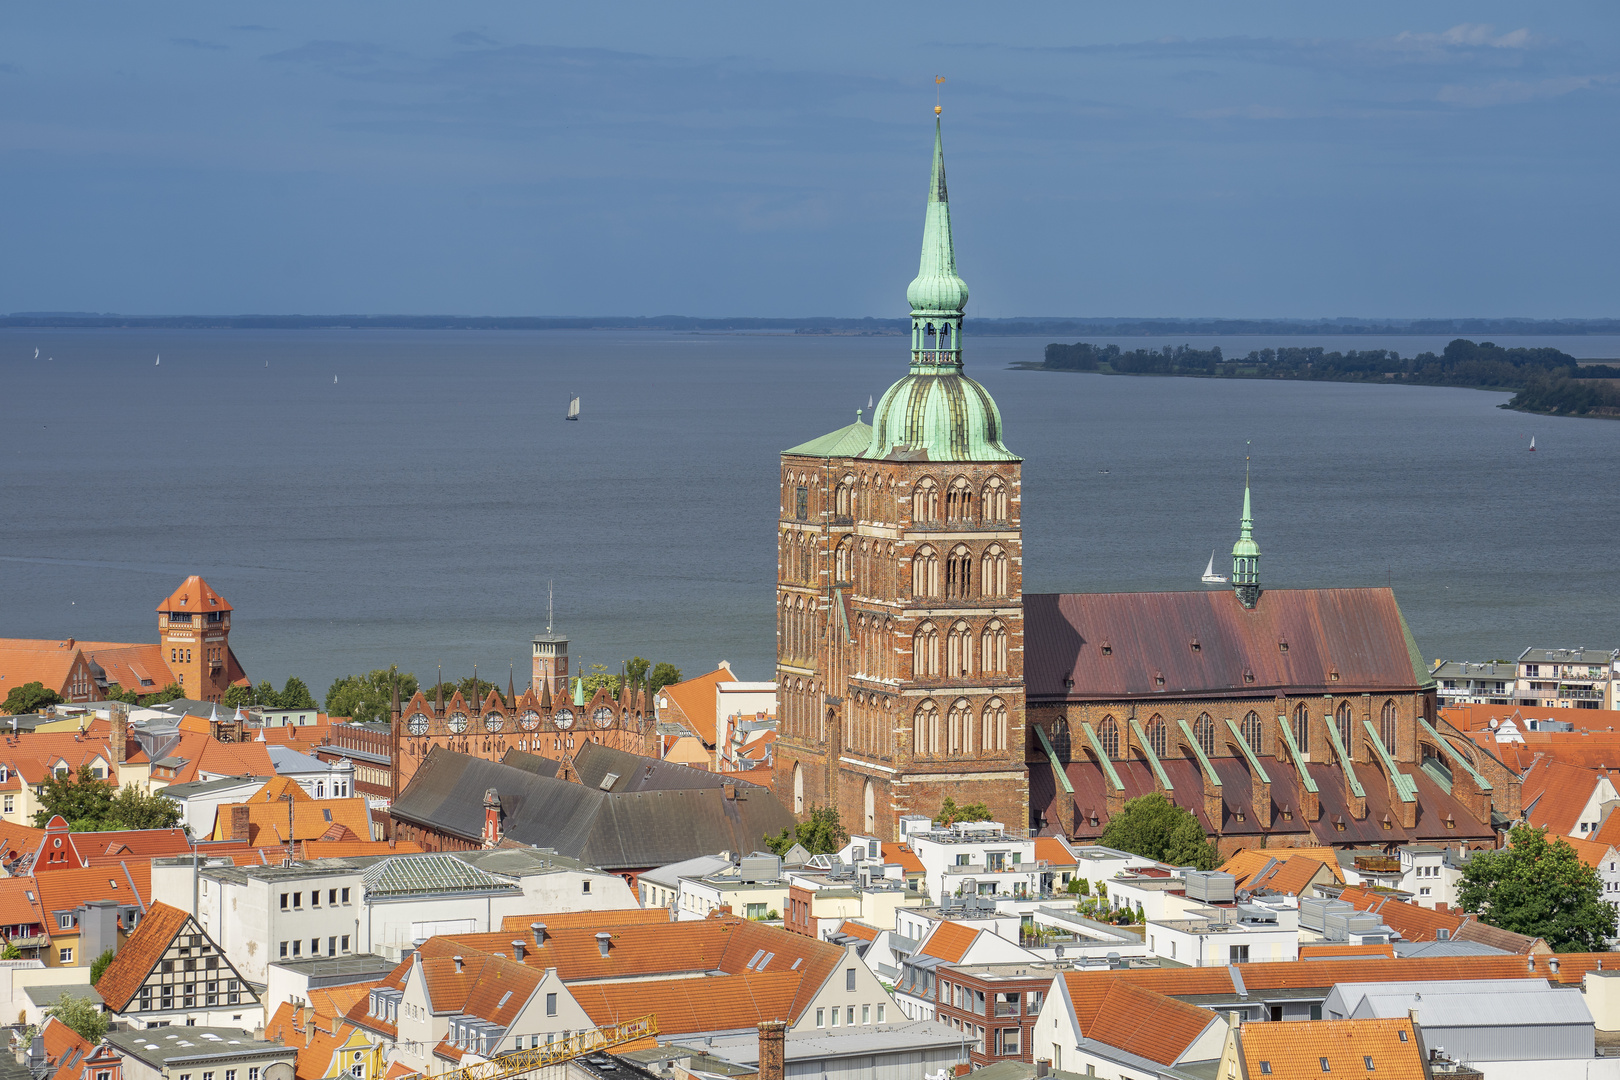 Über den Dächern von Stralsund